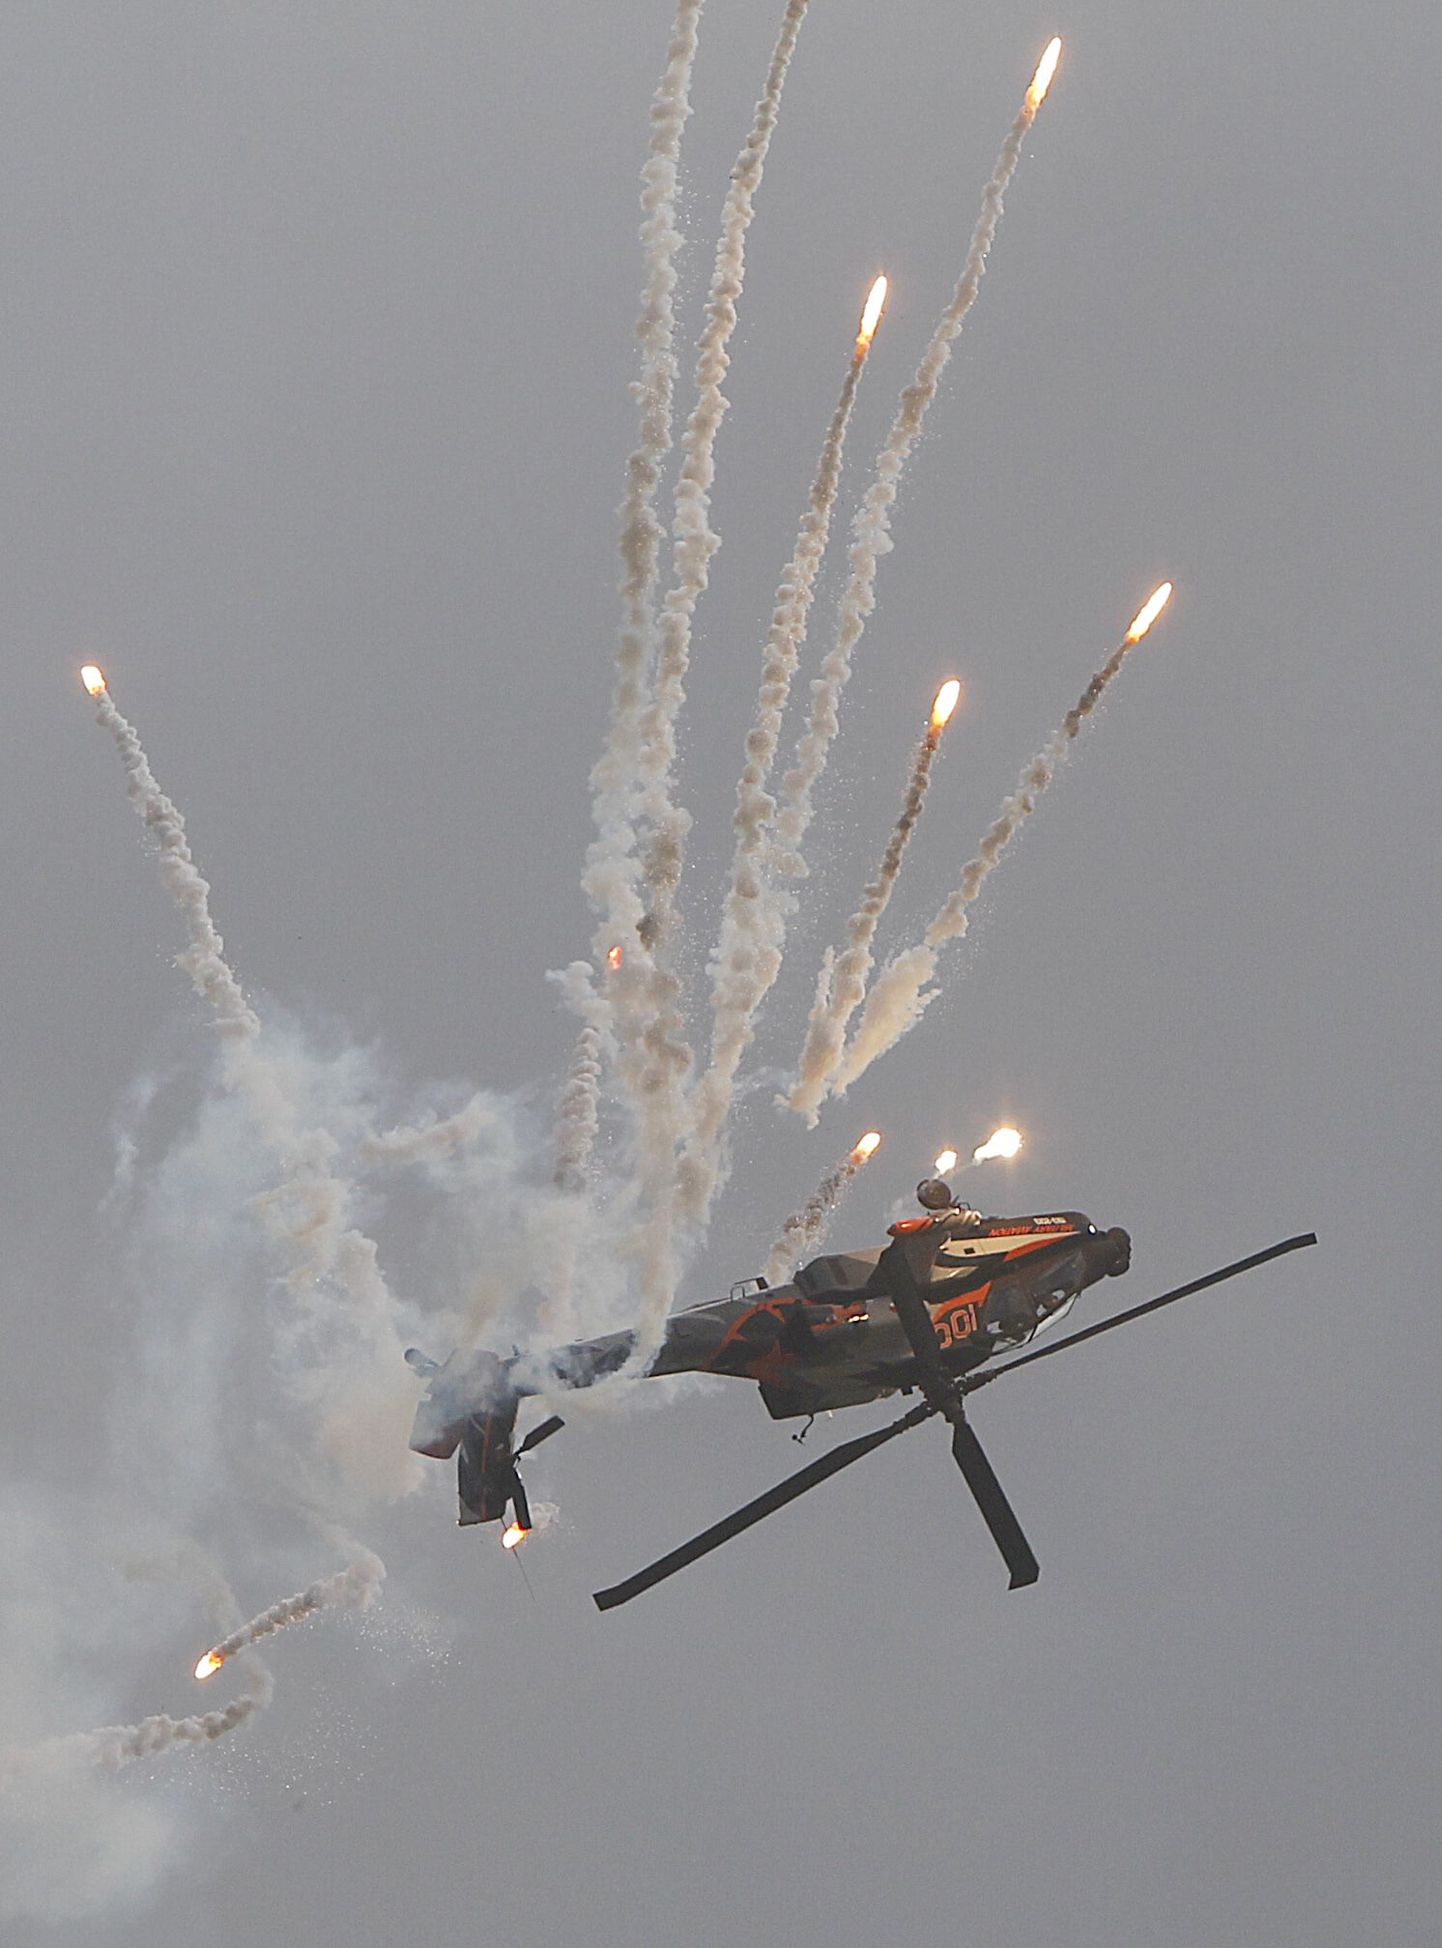 Hollandis valmistatud kopter AH-64 Apache näitab oskusi rahvusvahelisel lennundusmessil.